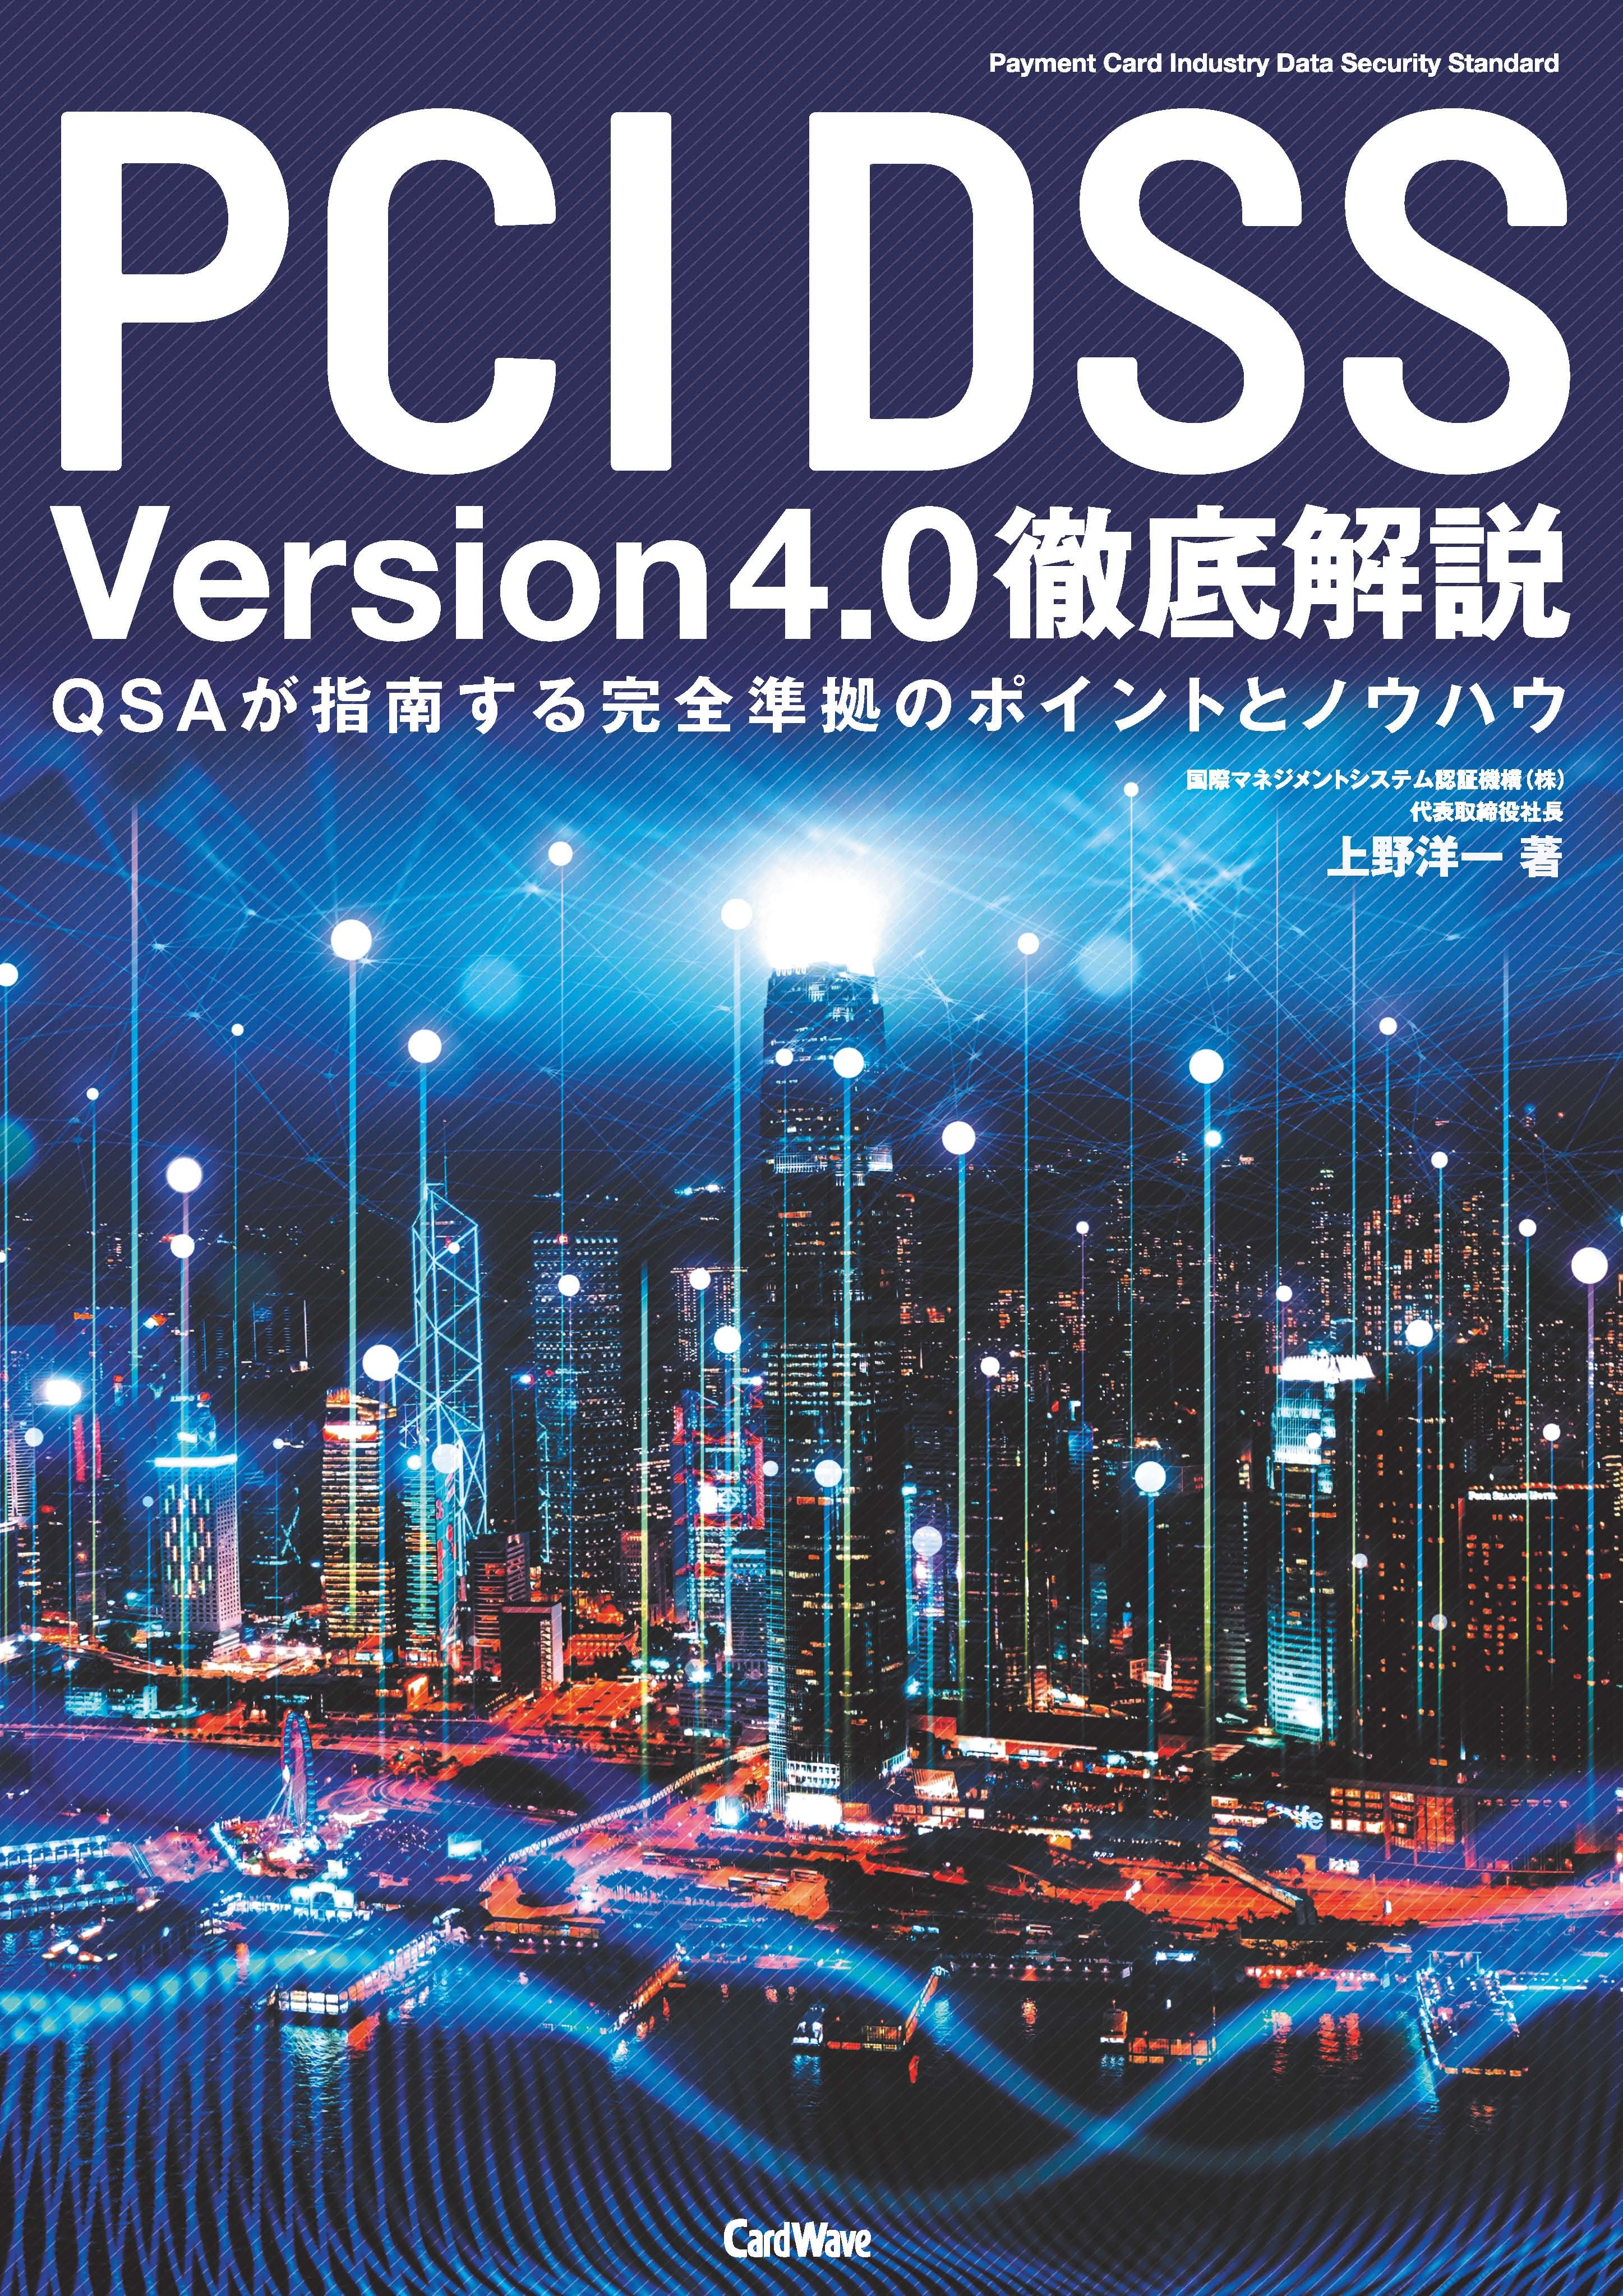 PCIDSSversion4.0.jpg